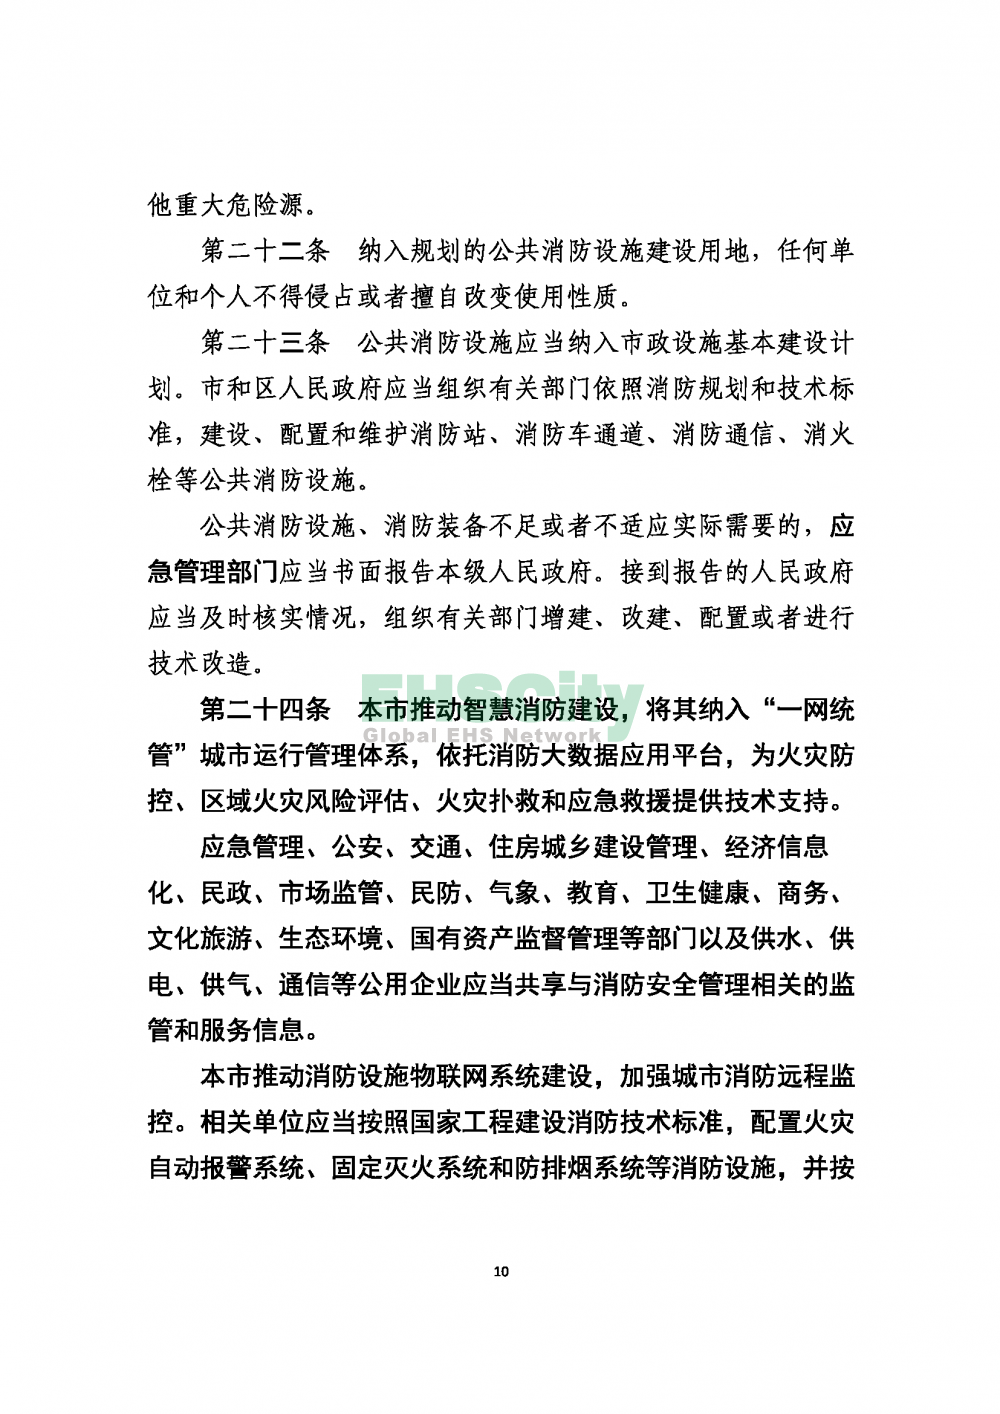 2020版上海消防条例_页面_10